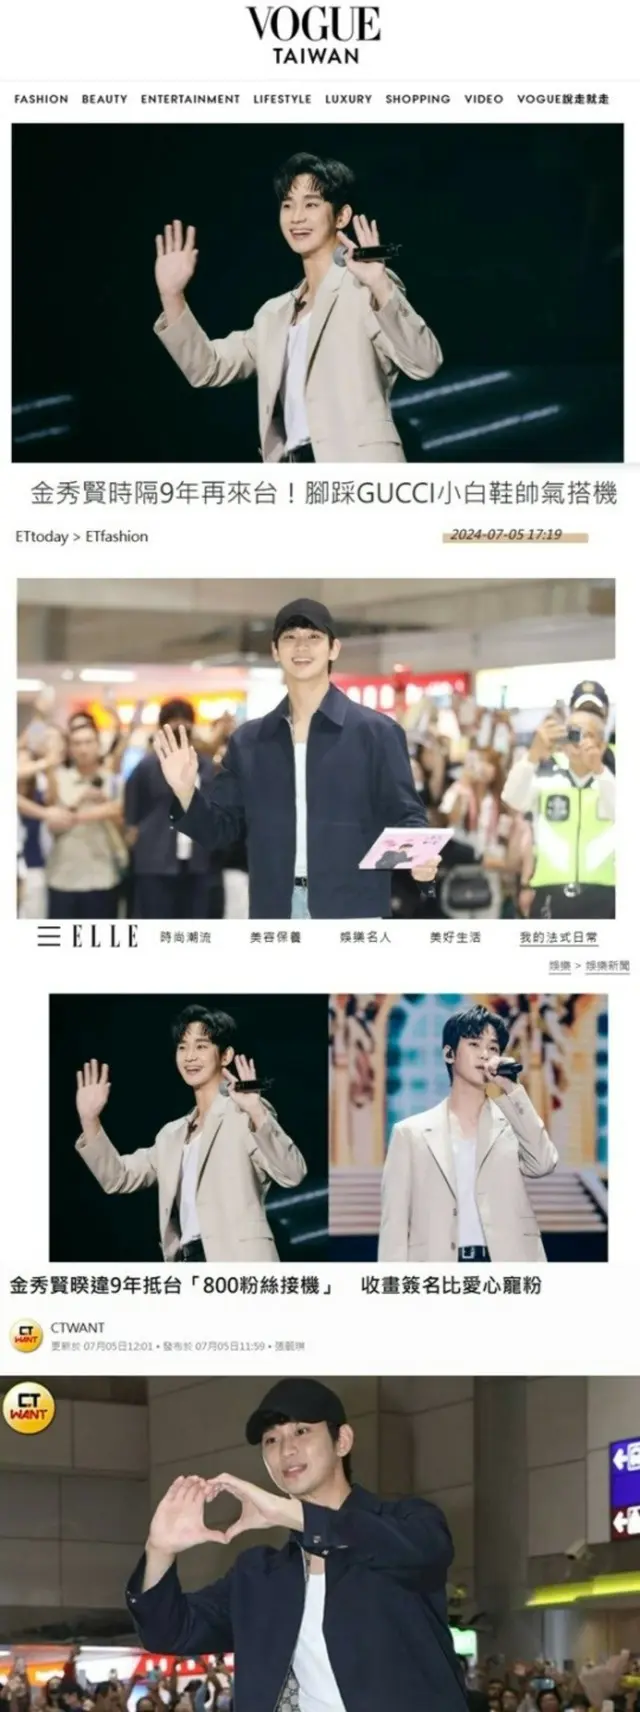 キム・スヒョン、台北ファンミーティングを現地メディアが大きく取り上げる…韓流トップスターの威厳確認